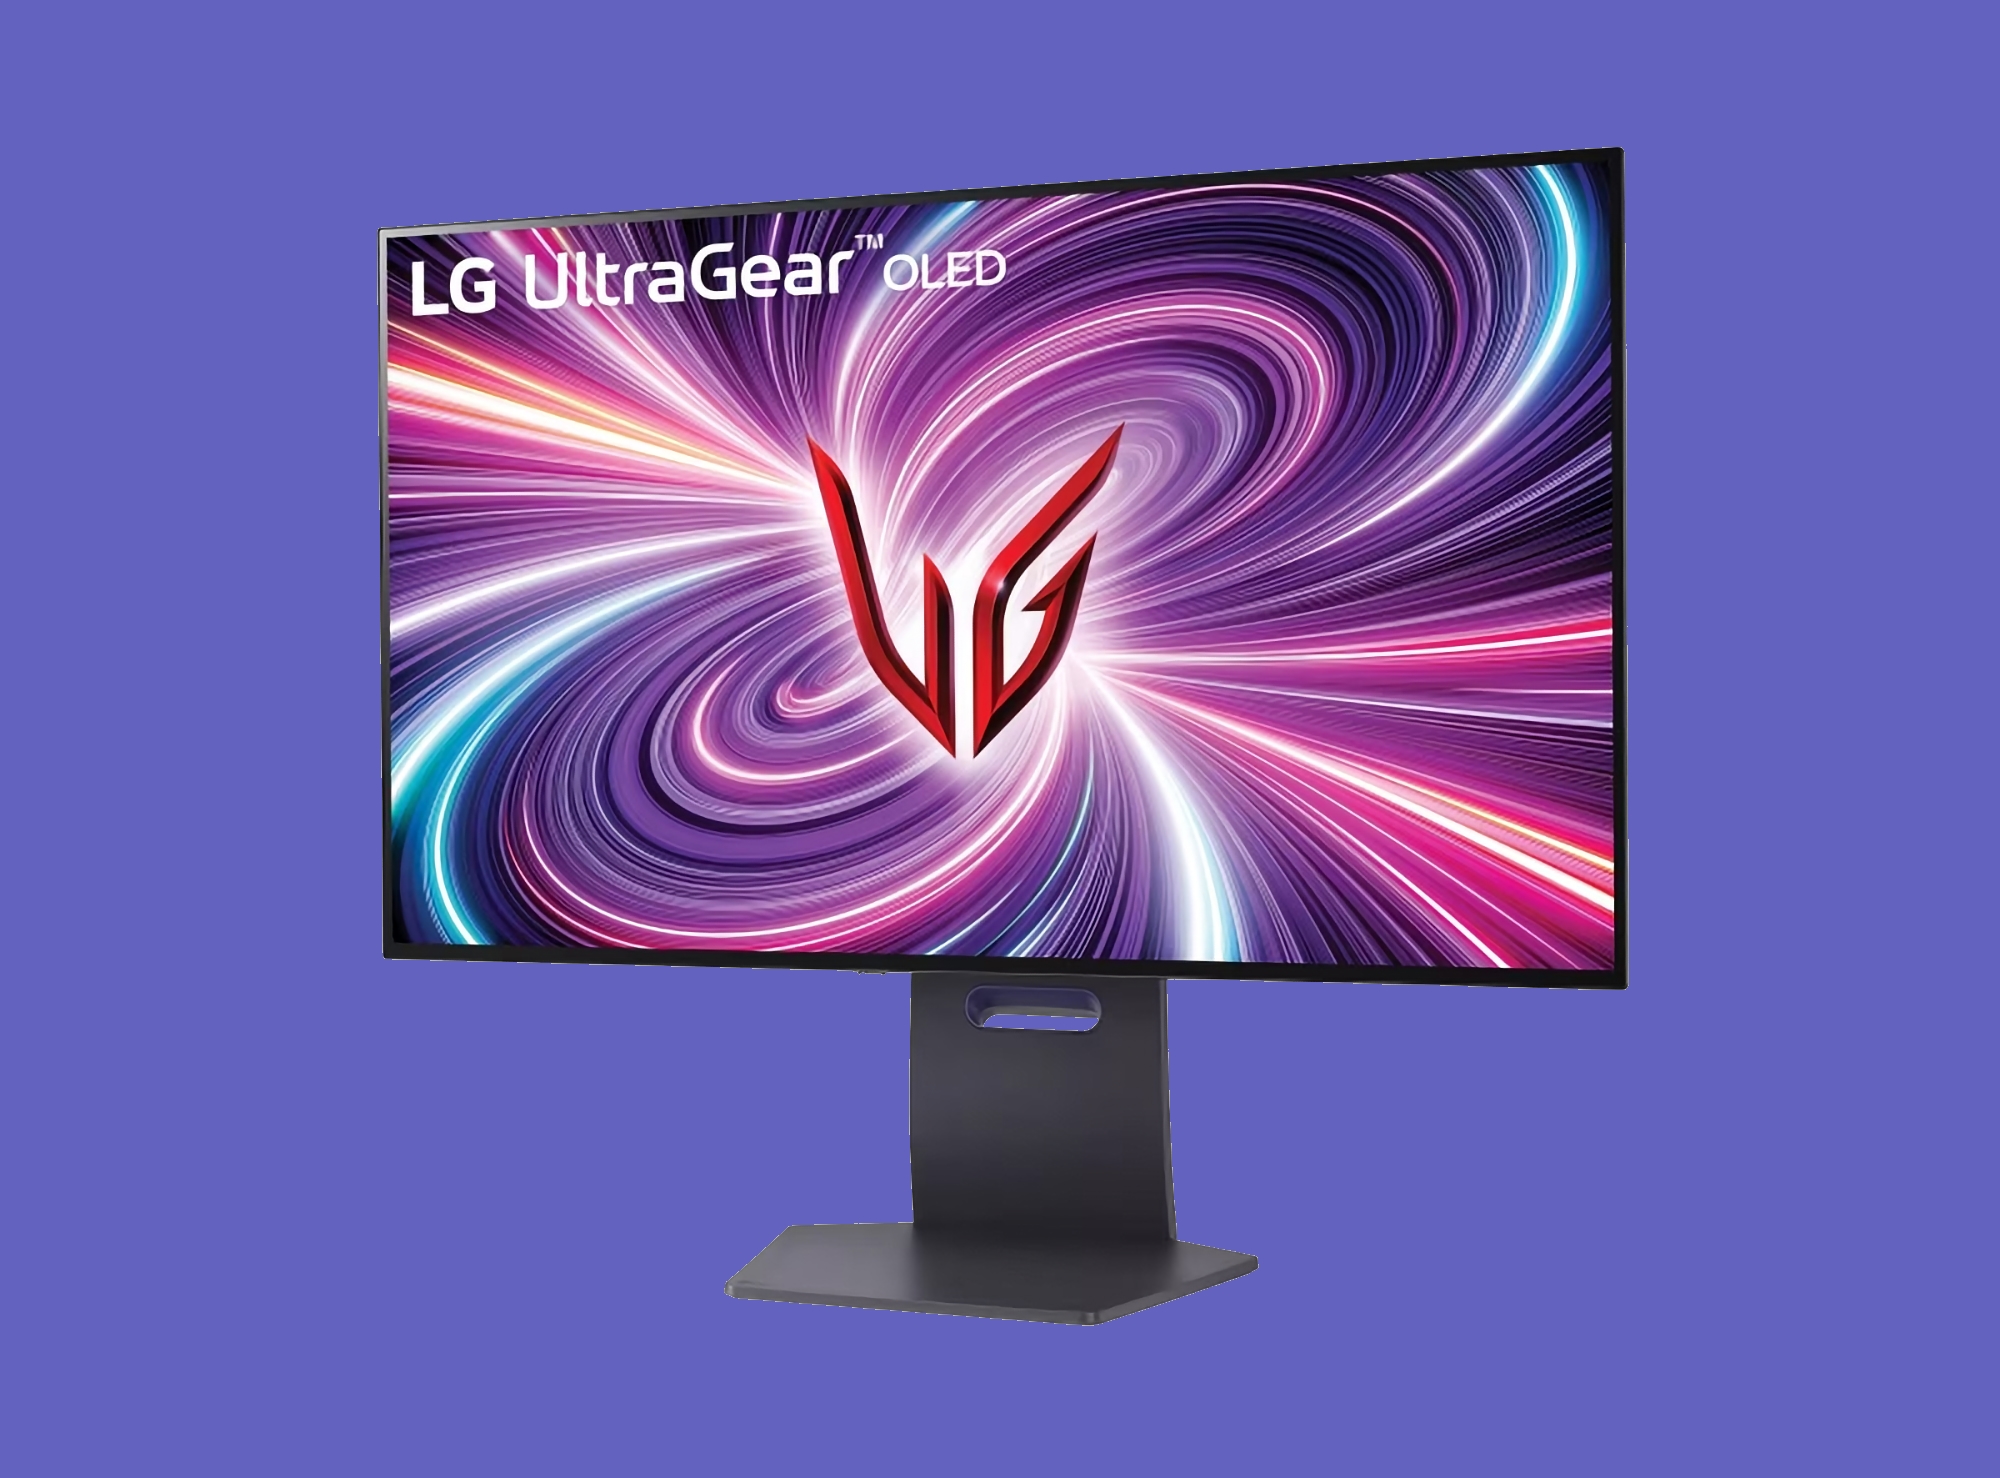 Firma LG zapowiedziała nowe monitory do gier UltraGear z ekranami OLED o rozdzielczości 4K i częstotliwości odświeżania do 480 Hz.